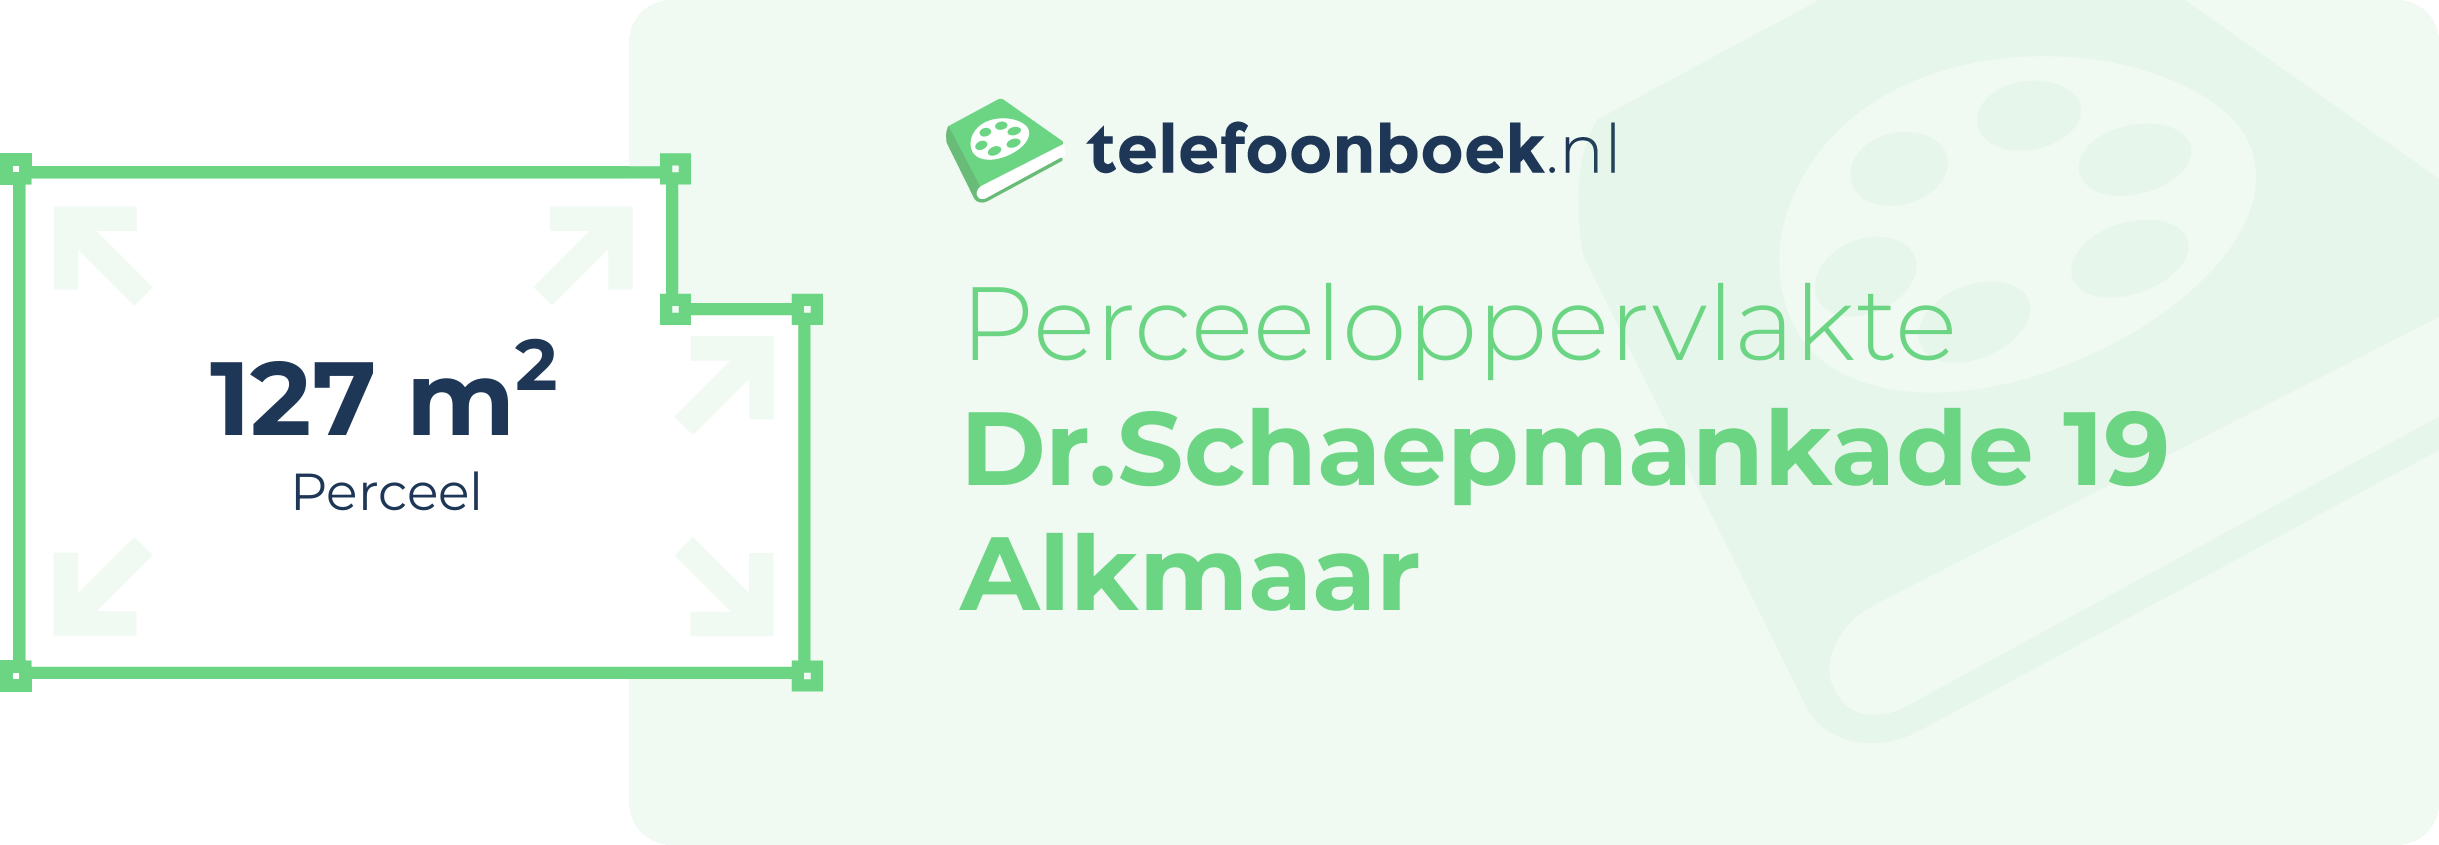 Perceeloppervlakte Dr.Schaepmankade 19 Alkmaar